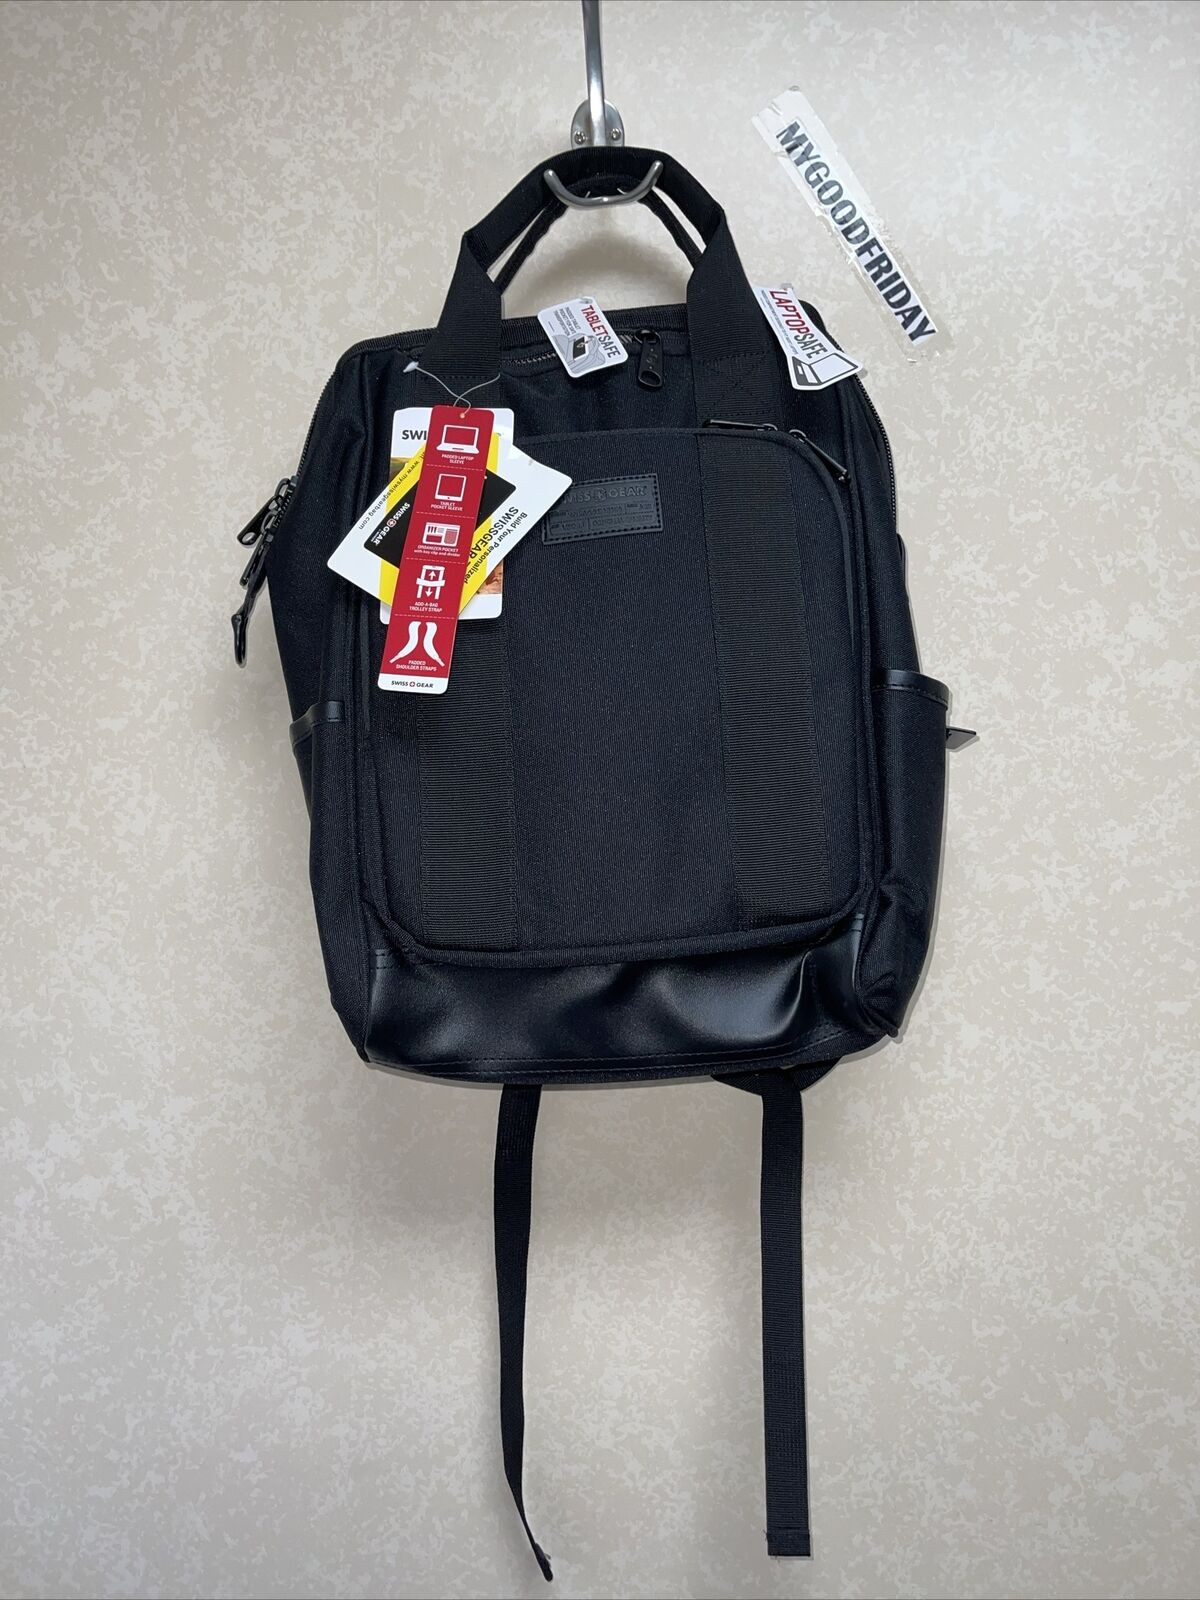 SwissGear 3577 Laptop Backpack, Black, 16-Inch  On Sale